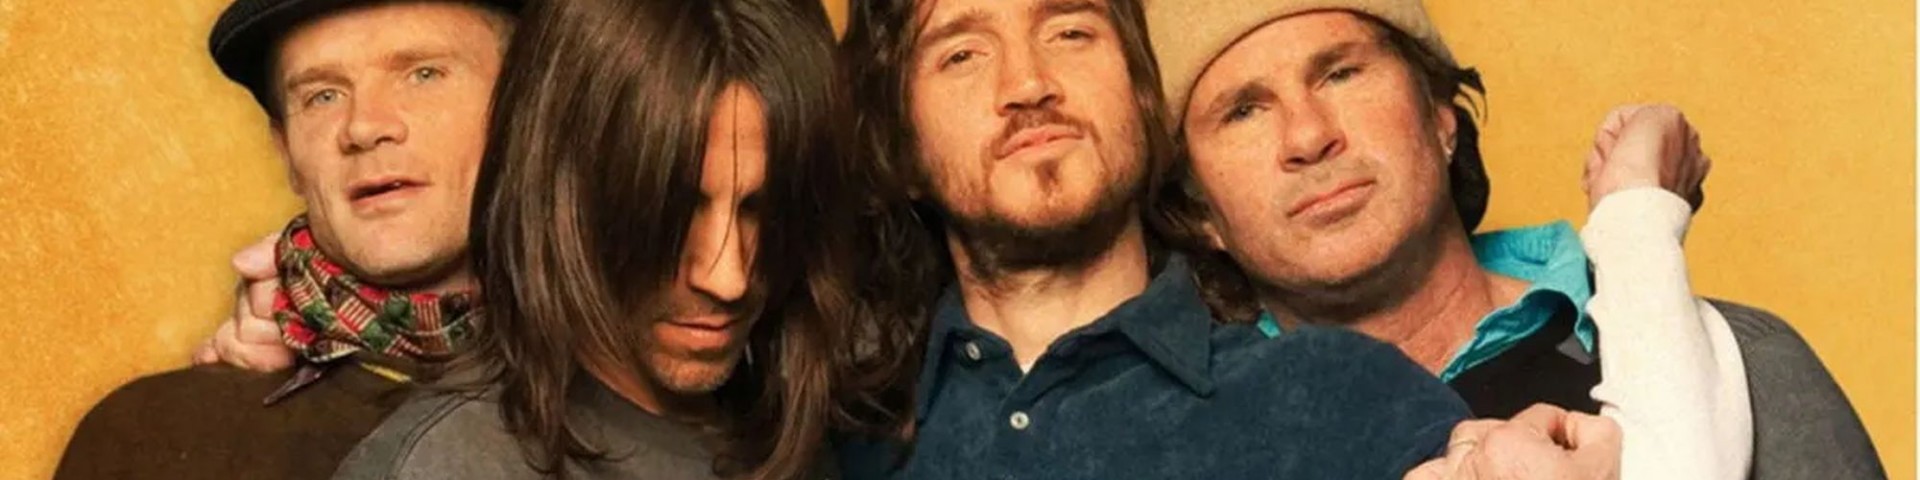 John Frusciante è rientrato nel gruppo: l’annuncio a sorpresa dei Red Hot Chili Peppers